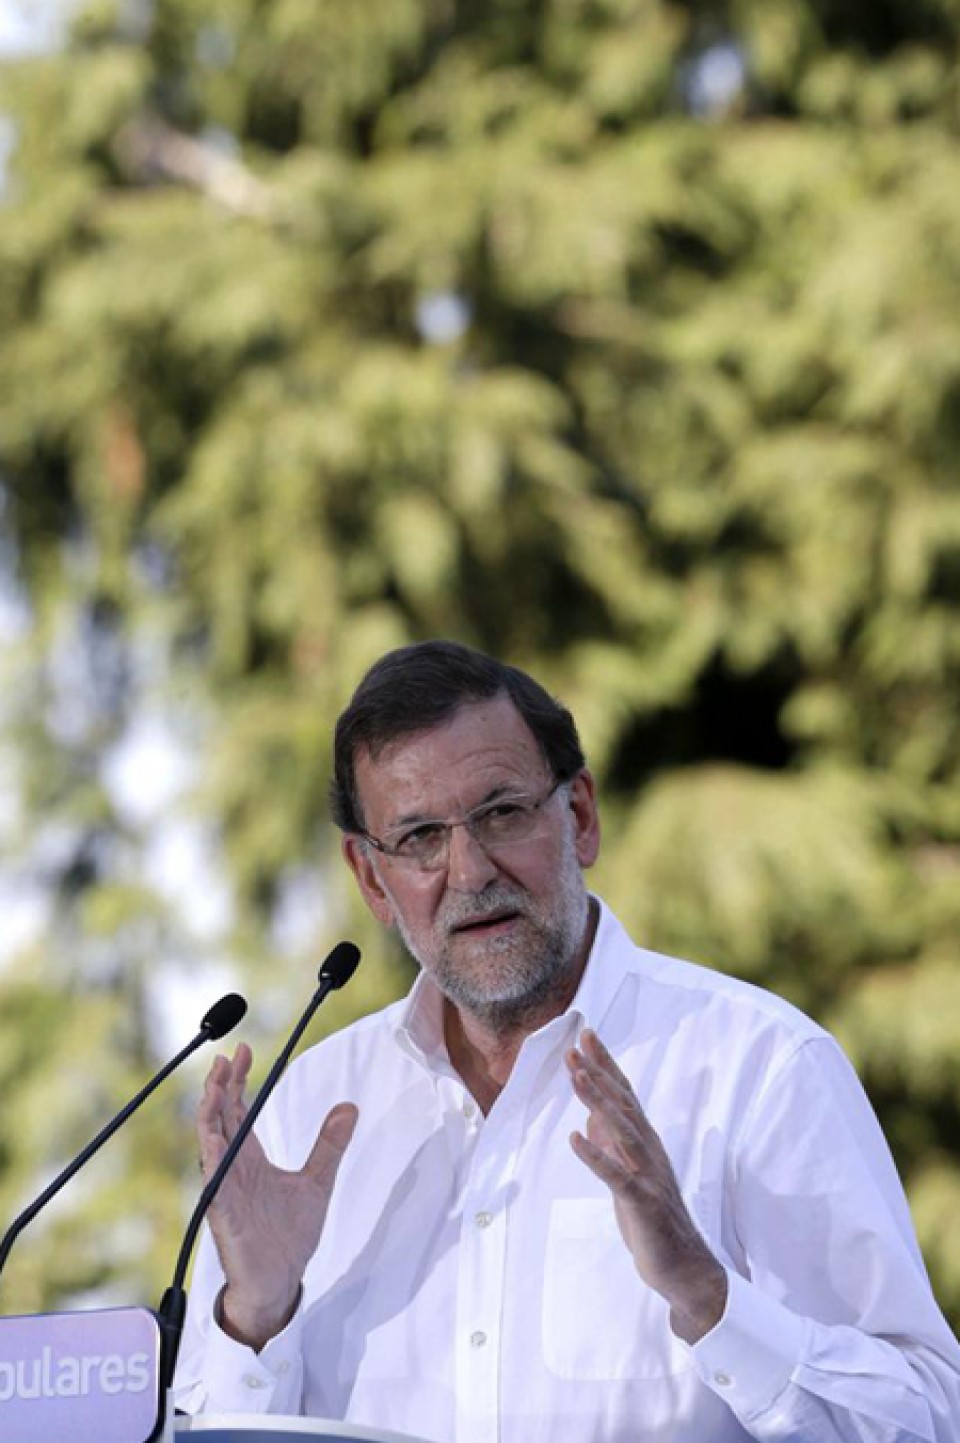 El presidente del Gobierno español, Mariano Rajoy. Imagen de archivo: EFE